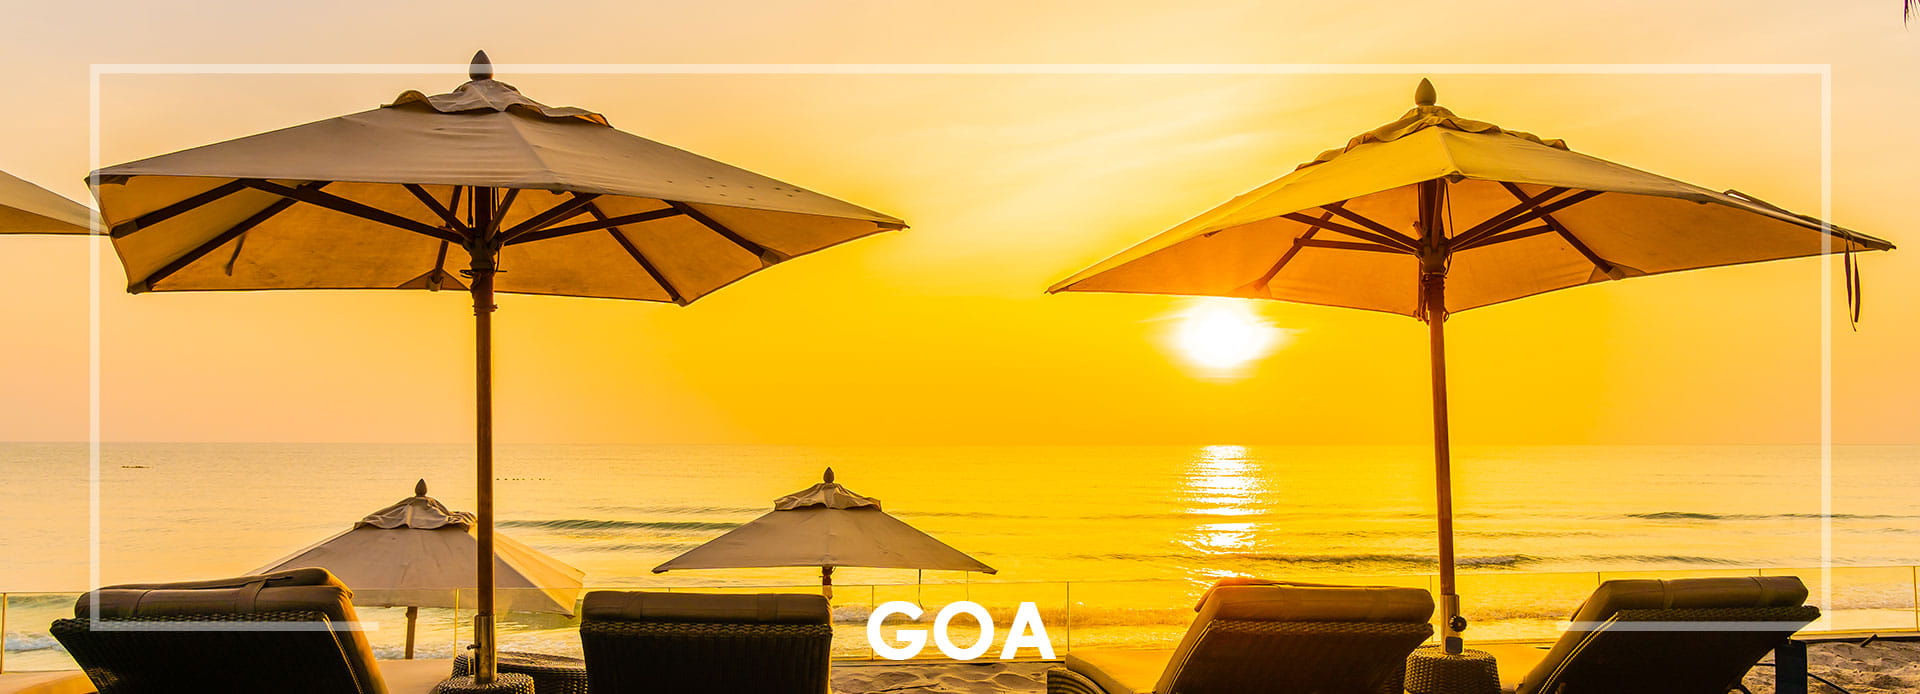  Goa